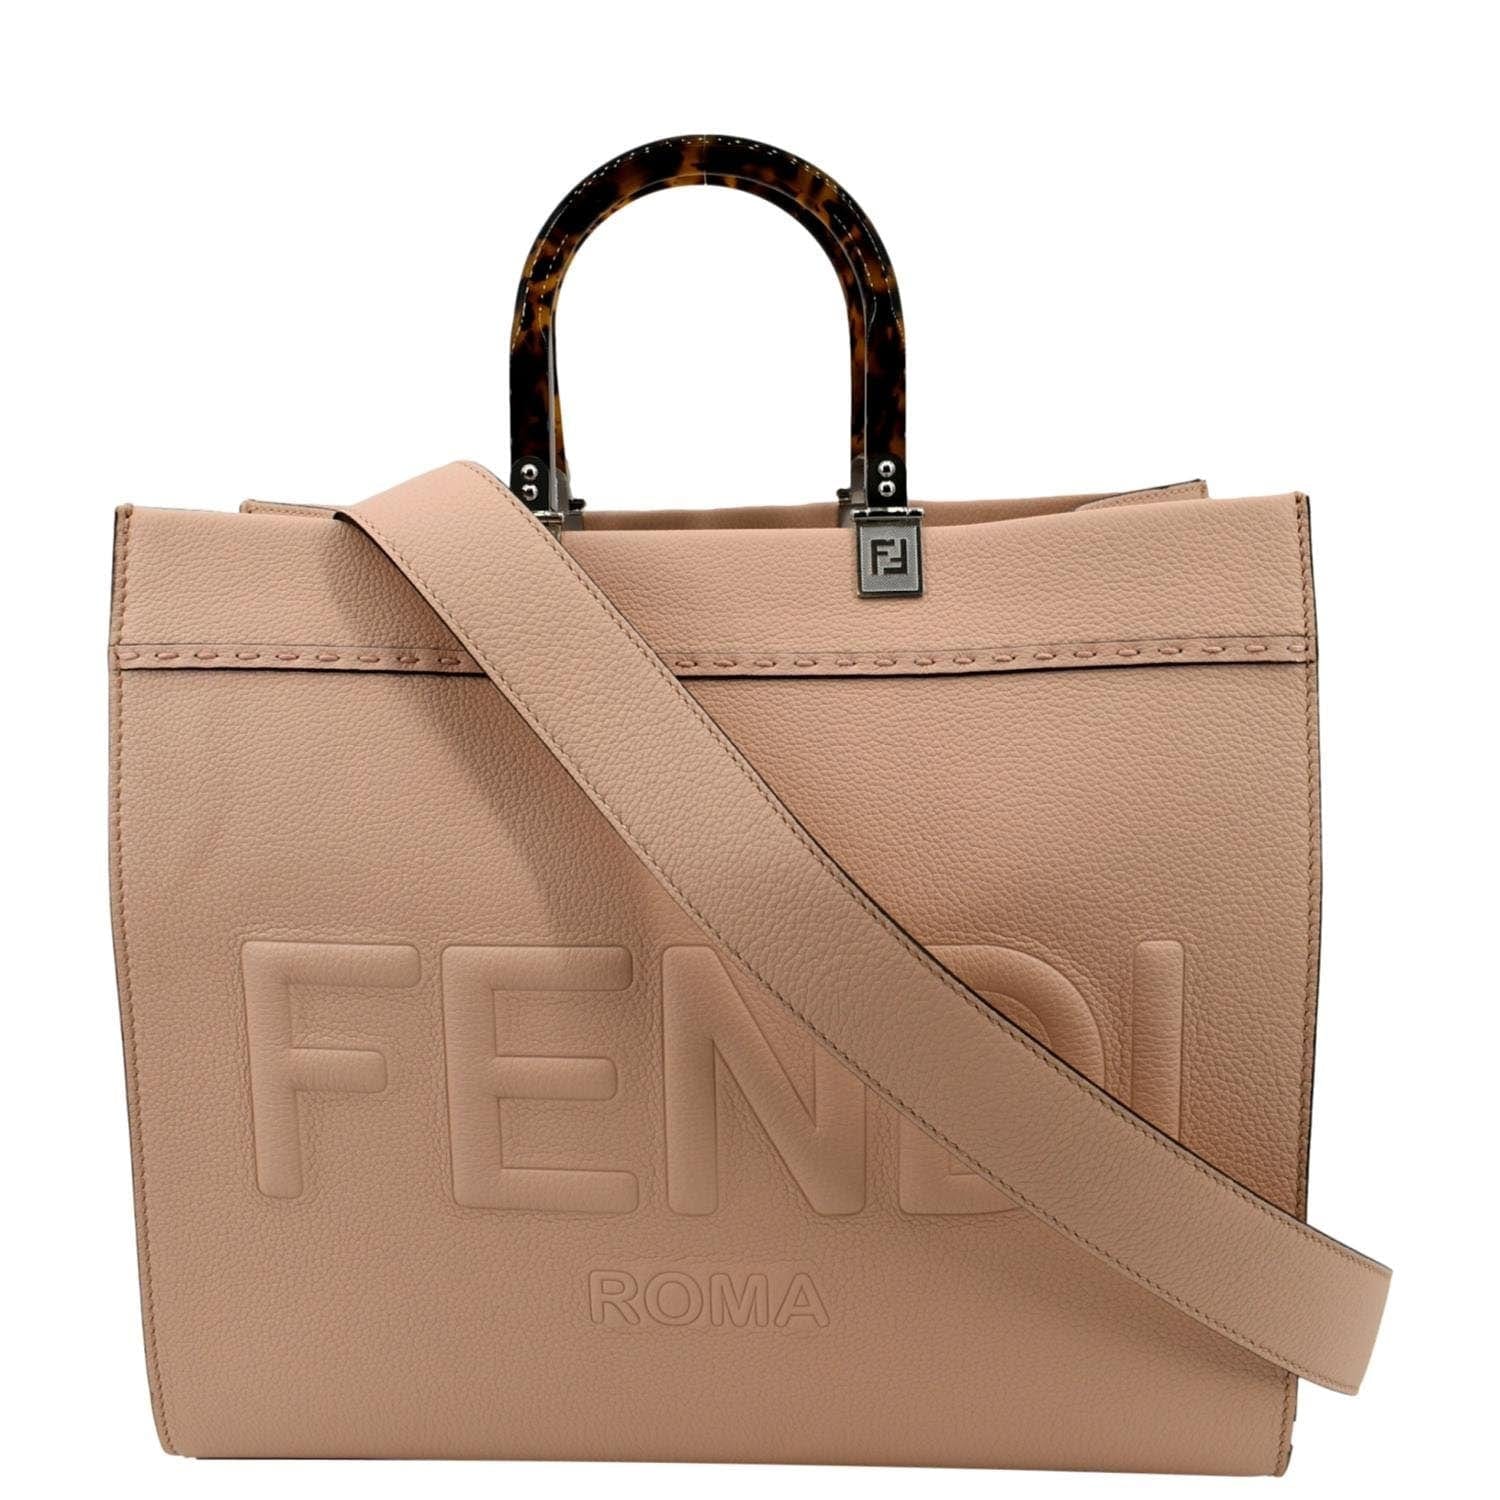 The Ultimate Designer Tote Bag: The Fendi Sunshine Tote - luxfy